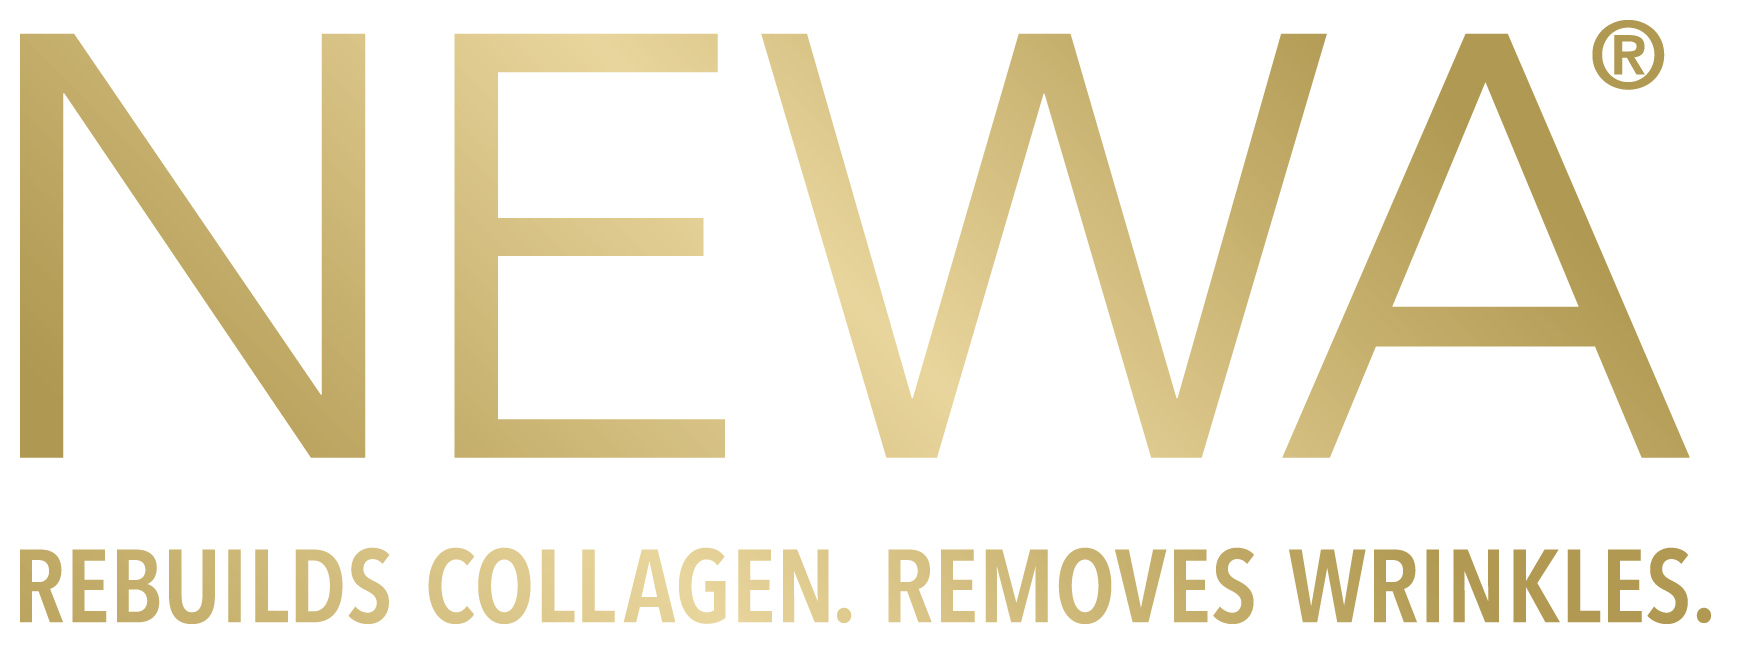 NEWA logo_tagline.jpg